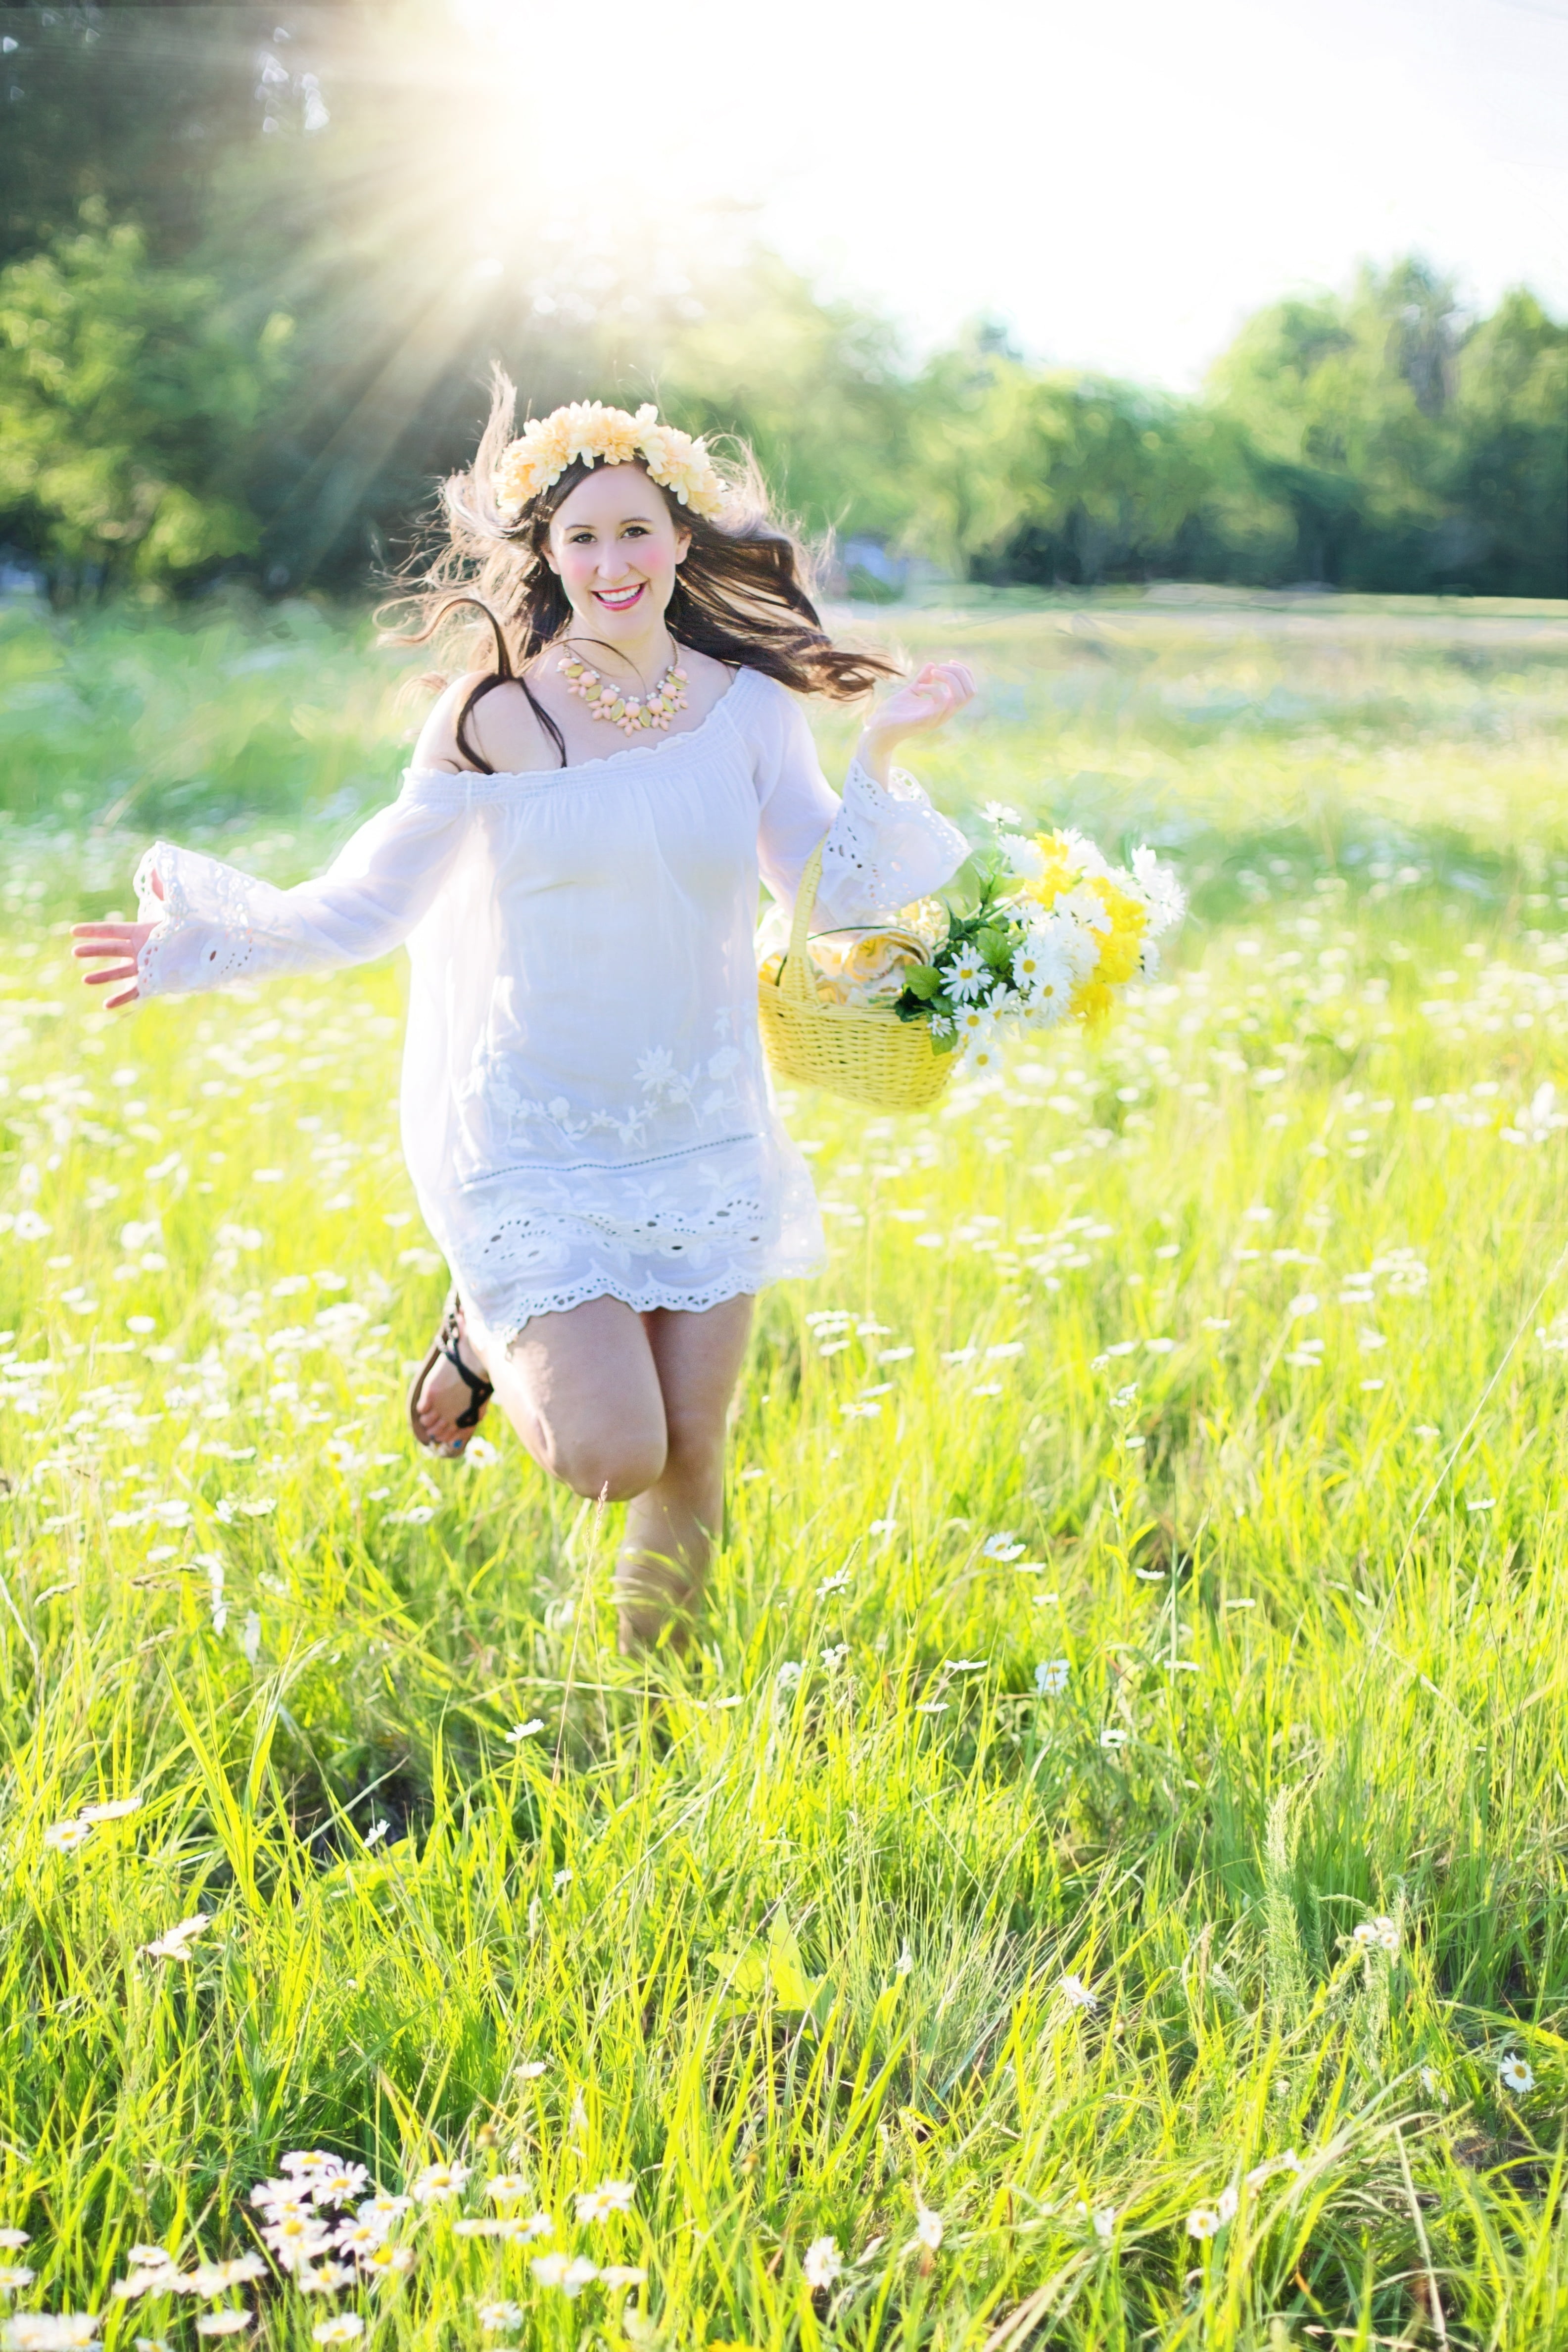 Woman running through green grass field holding a flower basket ...